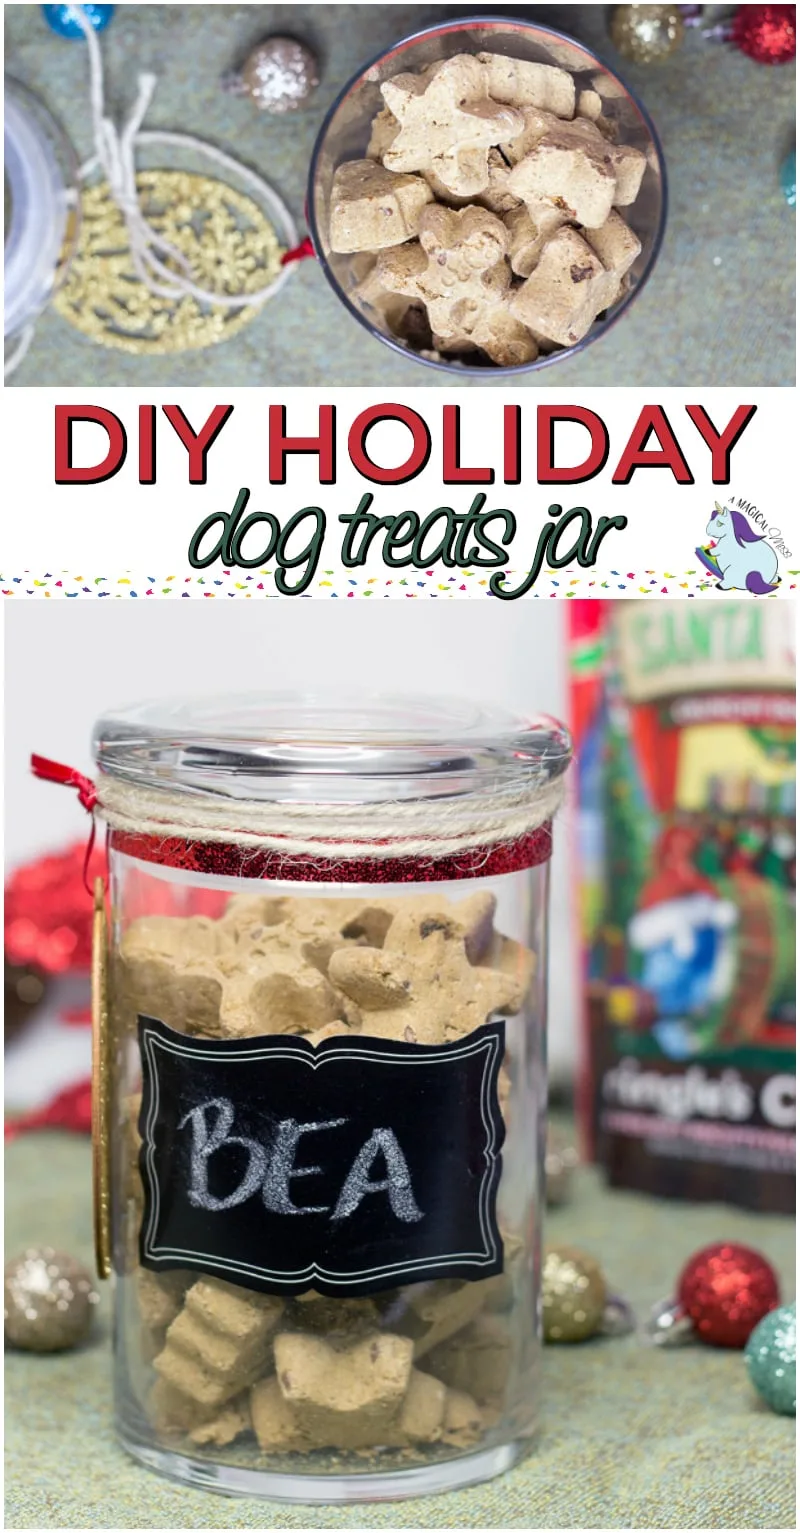 Holiday dog treats jar to make and fill with treats.